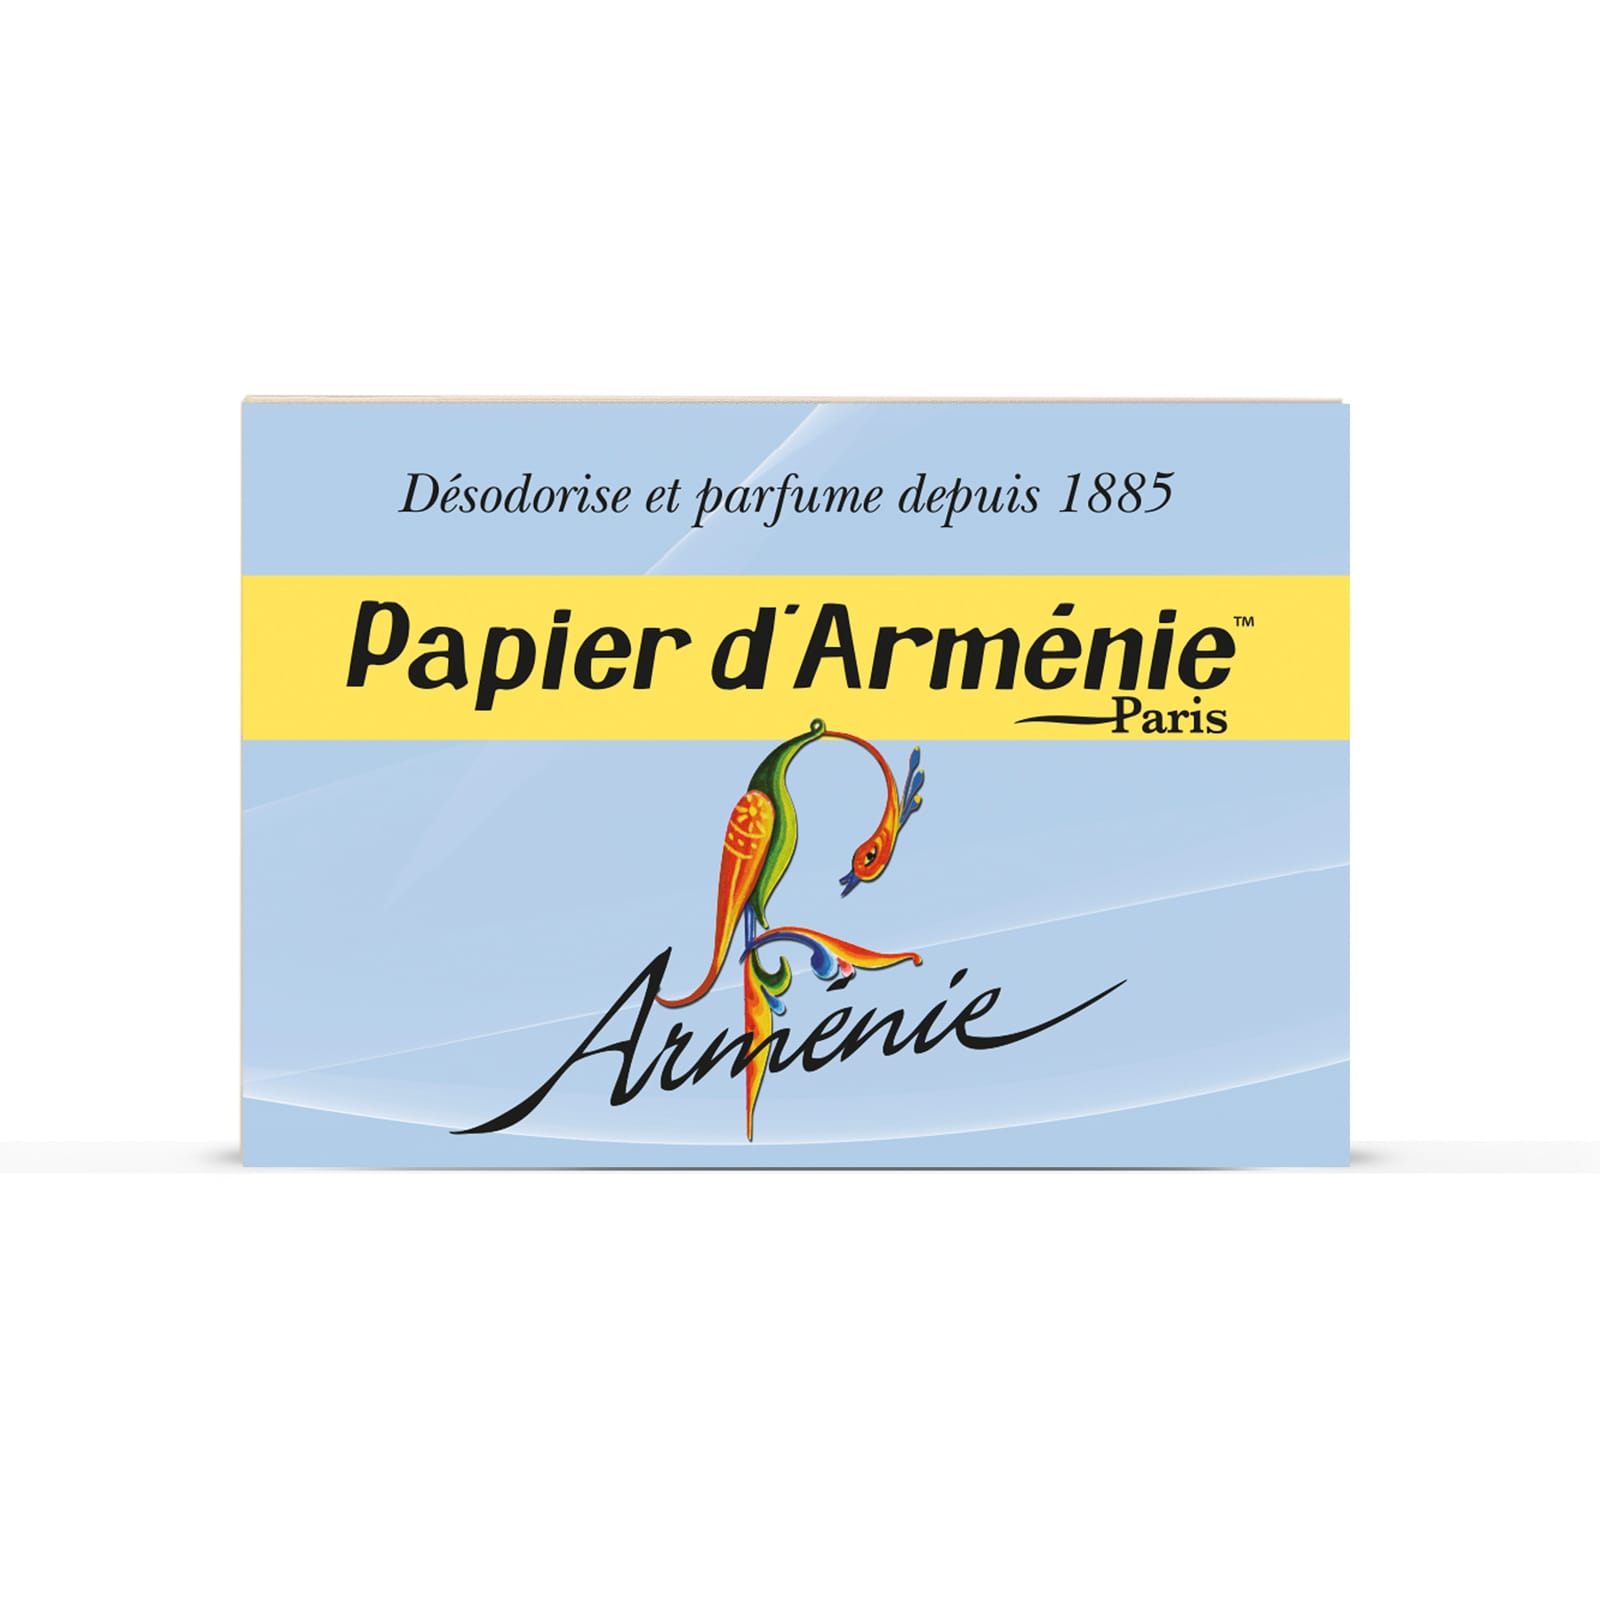 Le papier d'Arménie : un purificateur d'air